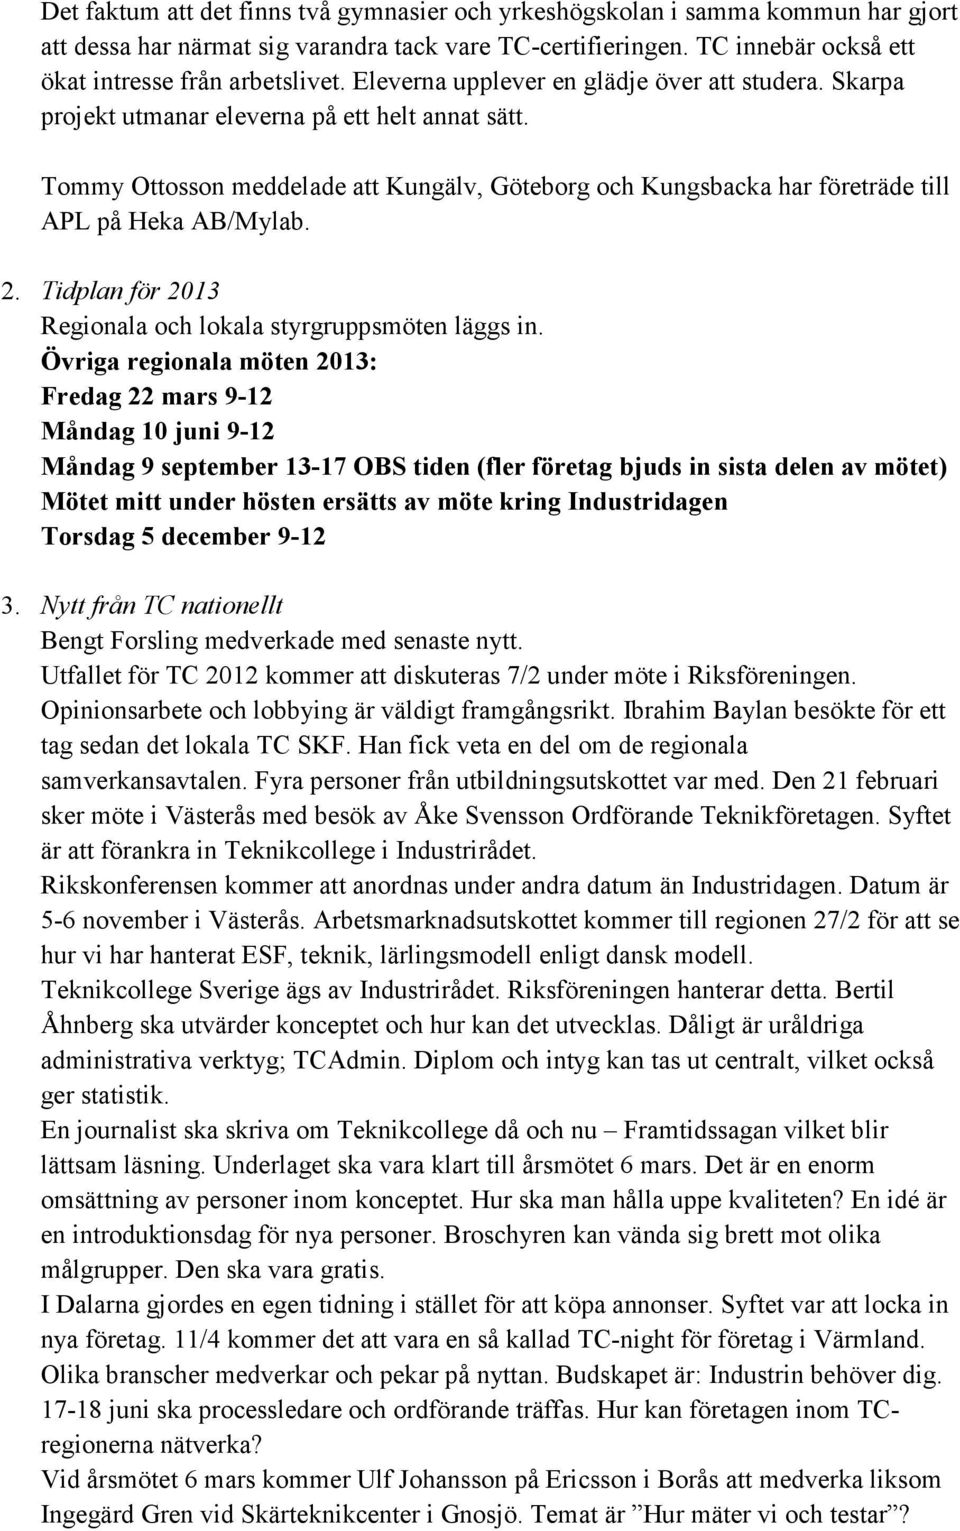 Tommy Ottosson meddelade att Kungälv, Göteborg och Kungsbacka har företräde till APL på Heka AB/Mylab. 2. Tidplan för 2013 Regionala och lokala styrgruppsmöten läggs in.